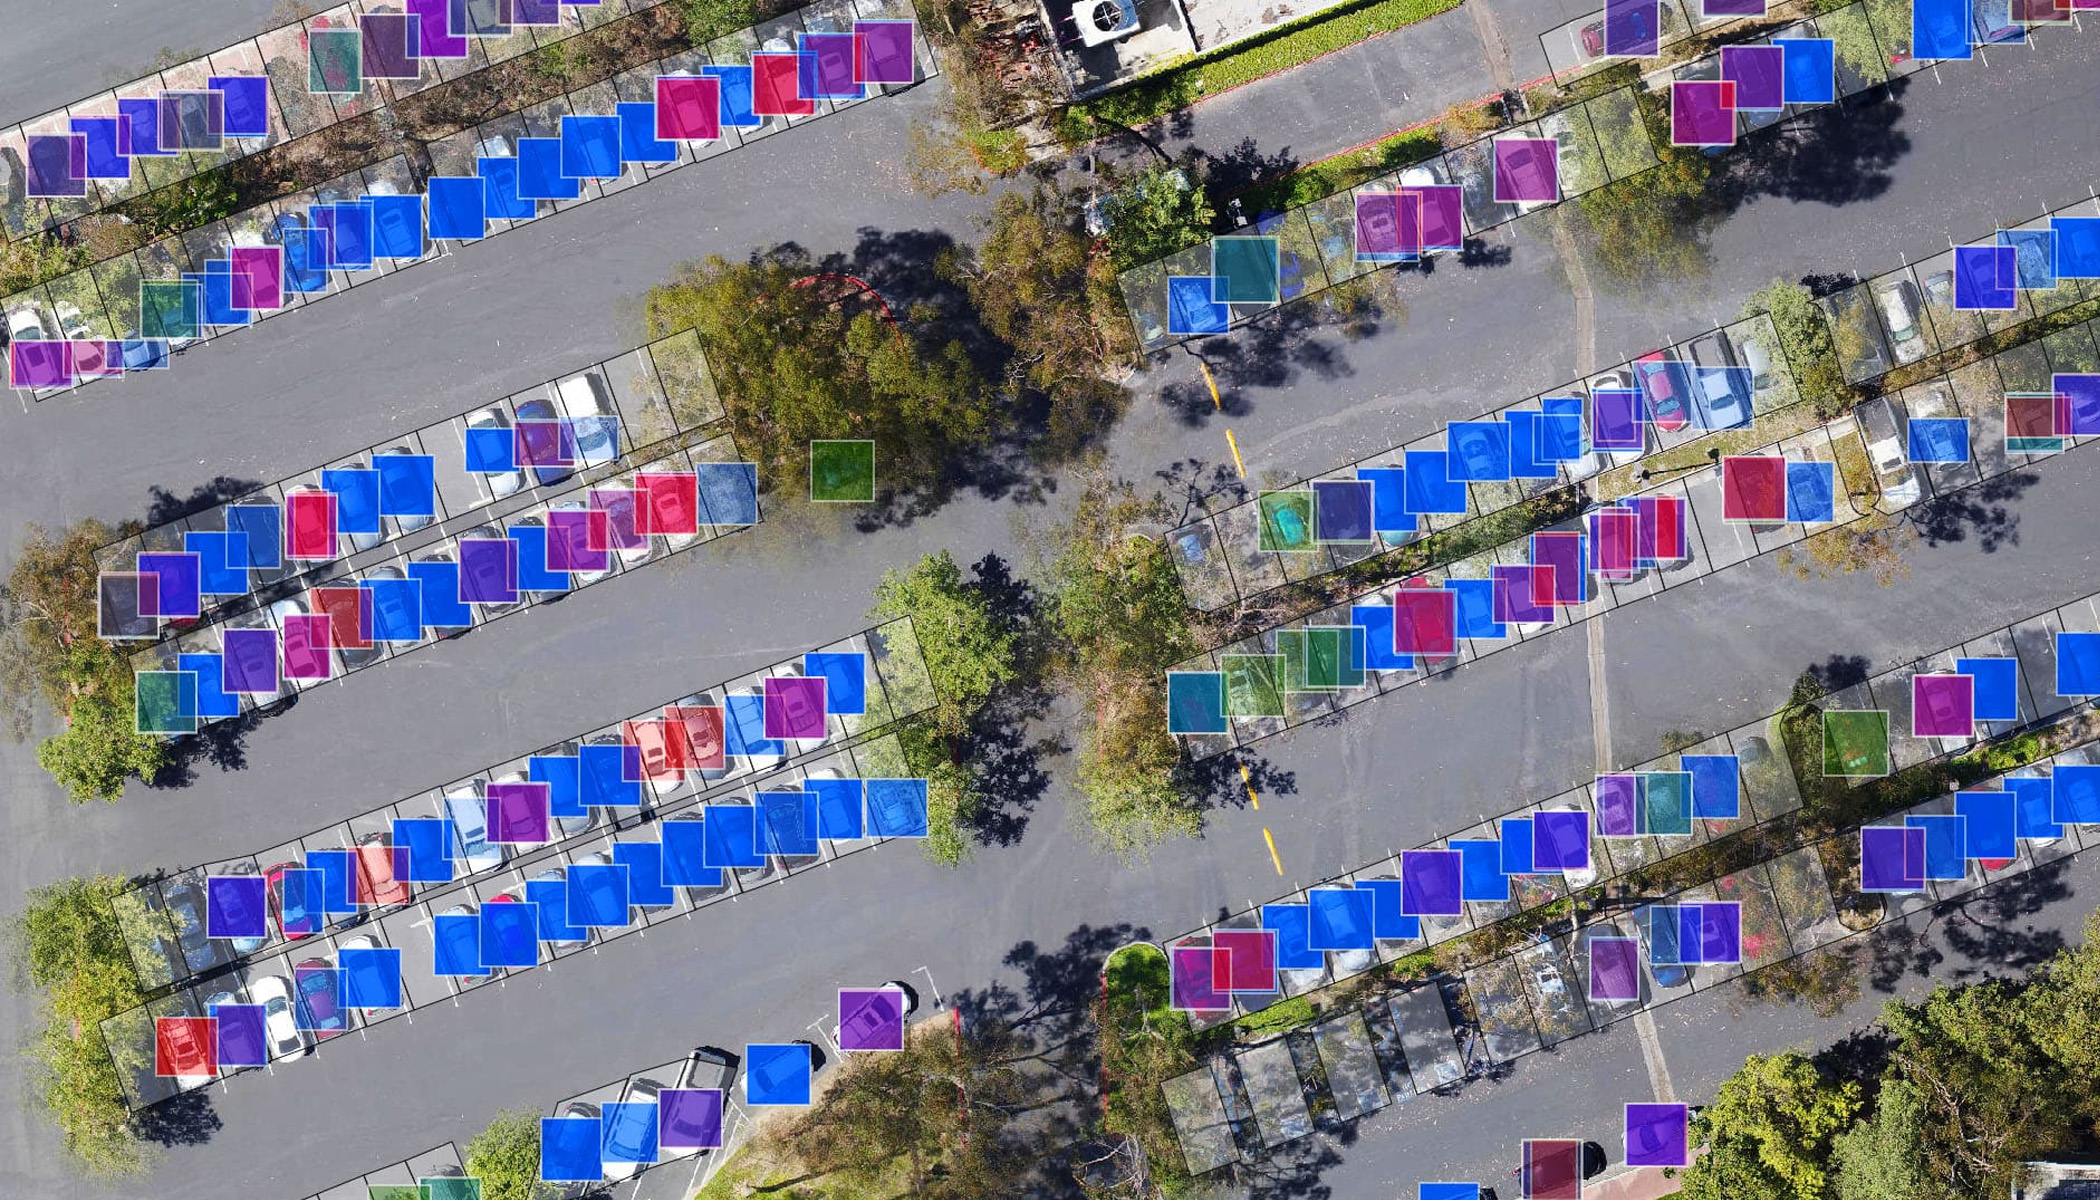 Vista aérea de un aparcamiento con coches superpuestos con cuadrados azules, morados, verdes y rosas